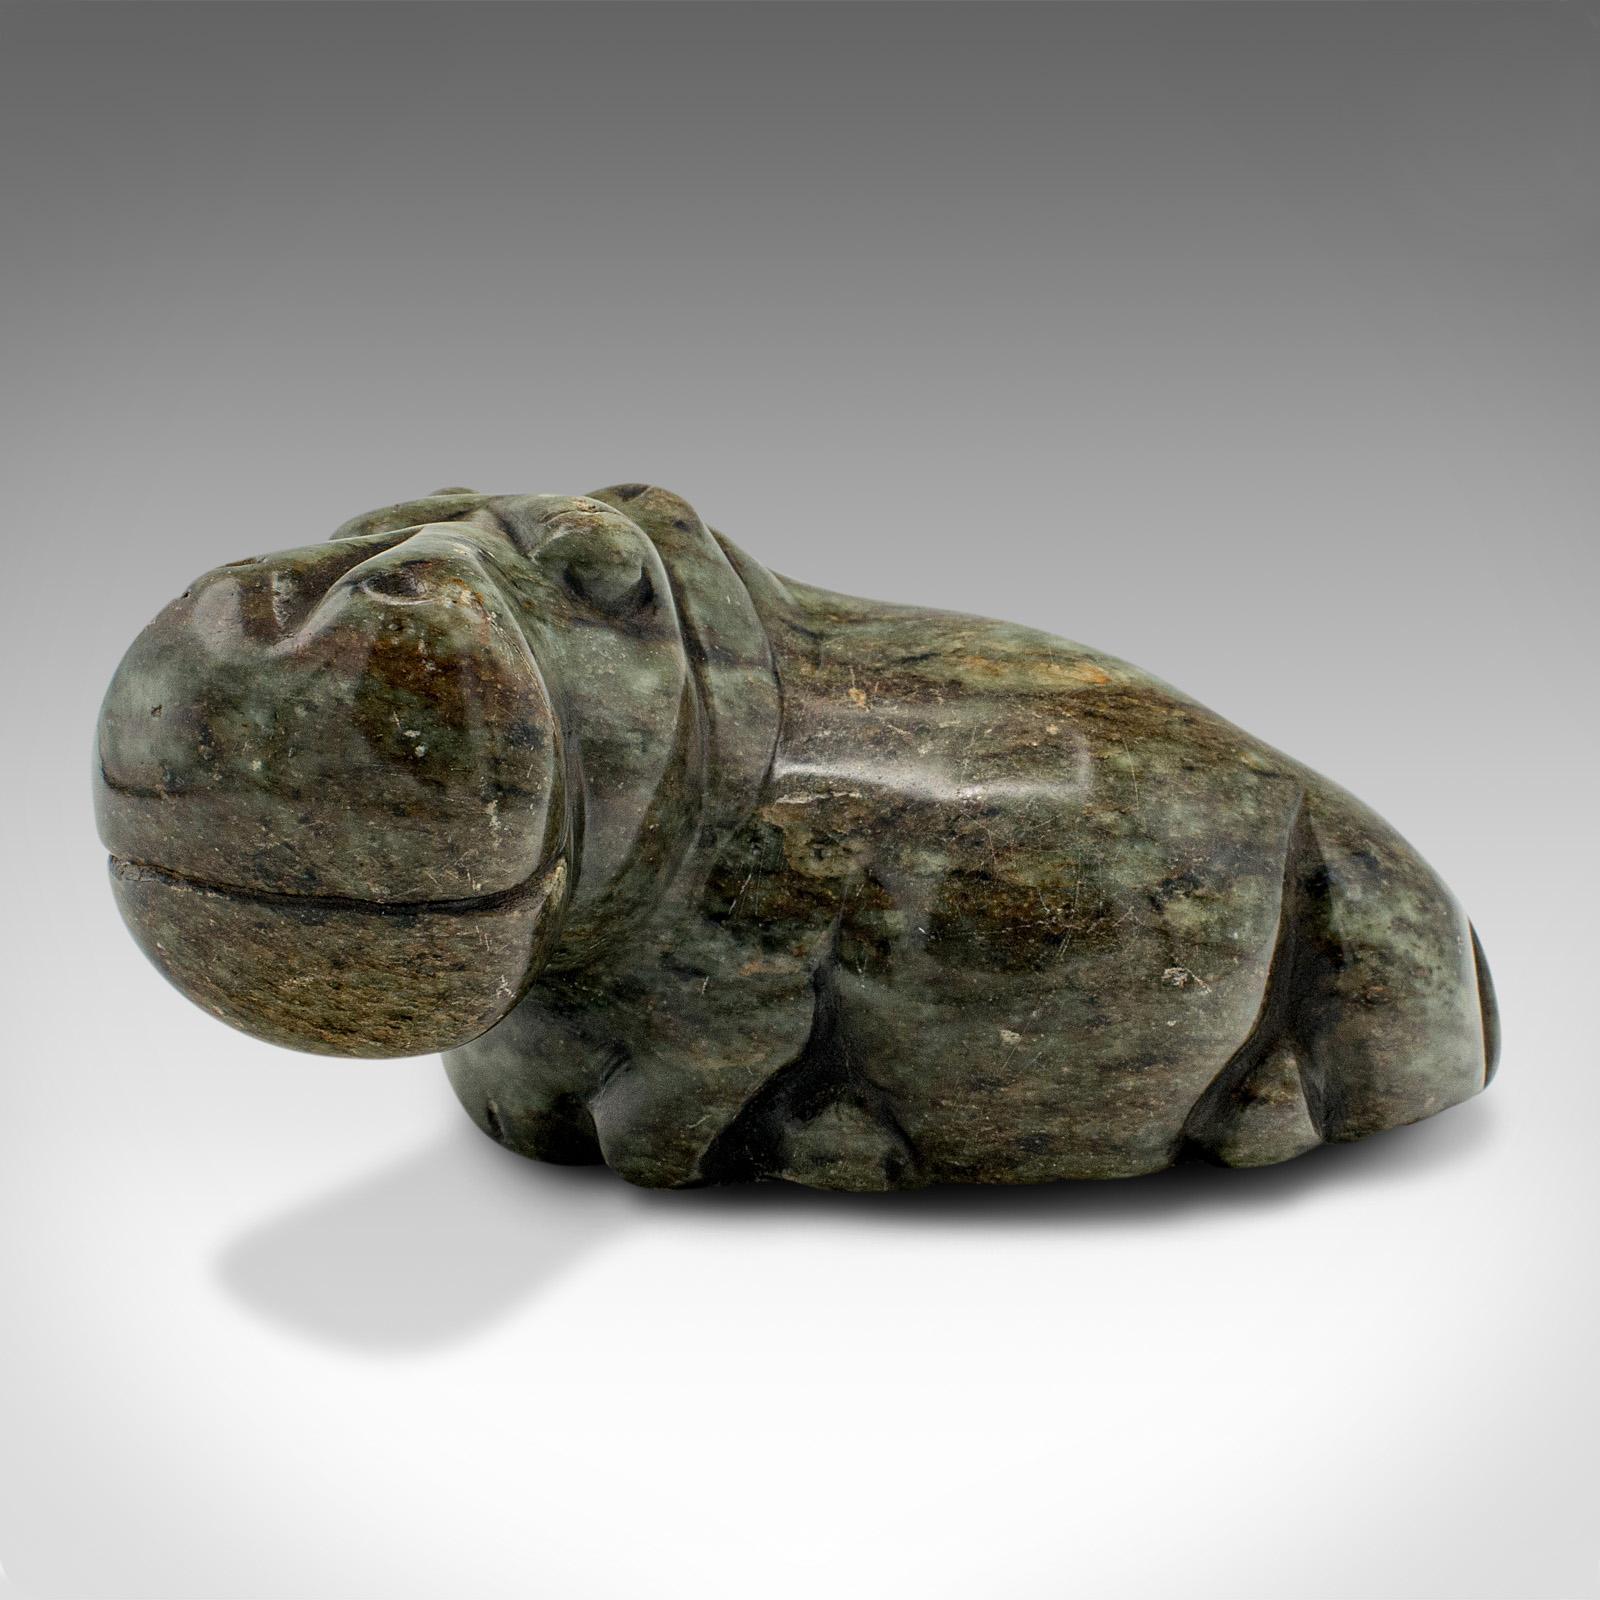 Il s'agit d'une petite figurine antique d'hippopotame. Animal africain en stéatite, sculpté à la main, datant de la fin de la période victorienne, vers 1900.

Adorable et jovial, avec un superbe intérêt pour la pierre
Présente une patine vieillie